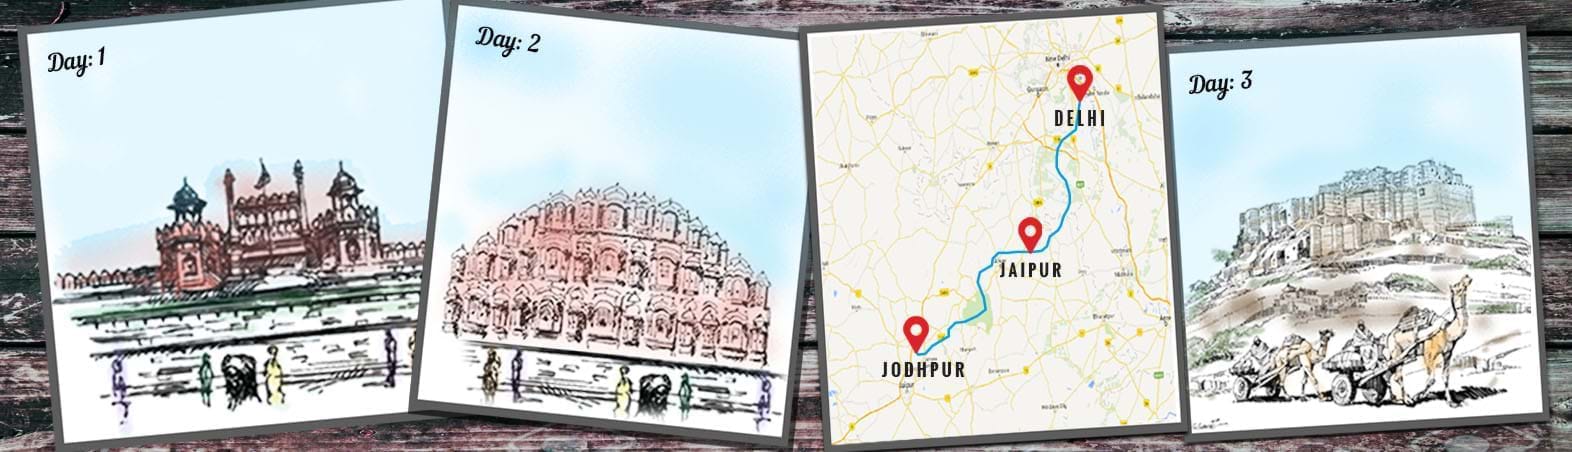 Delhi-Jaipur-Jodhpur Circuit